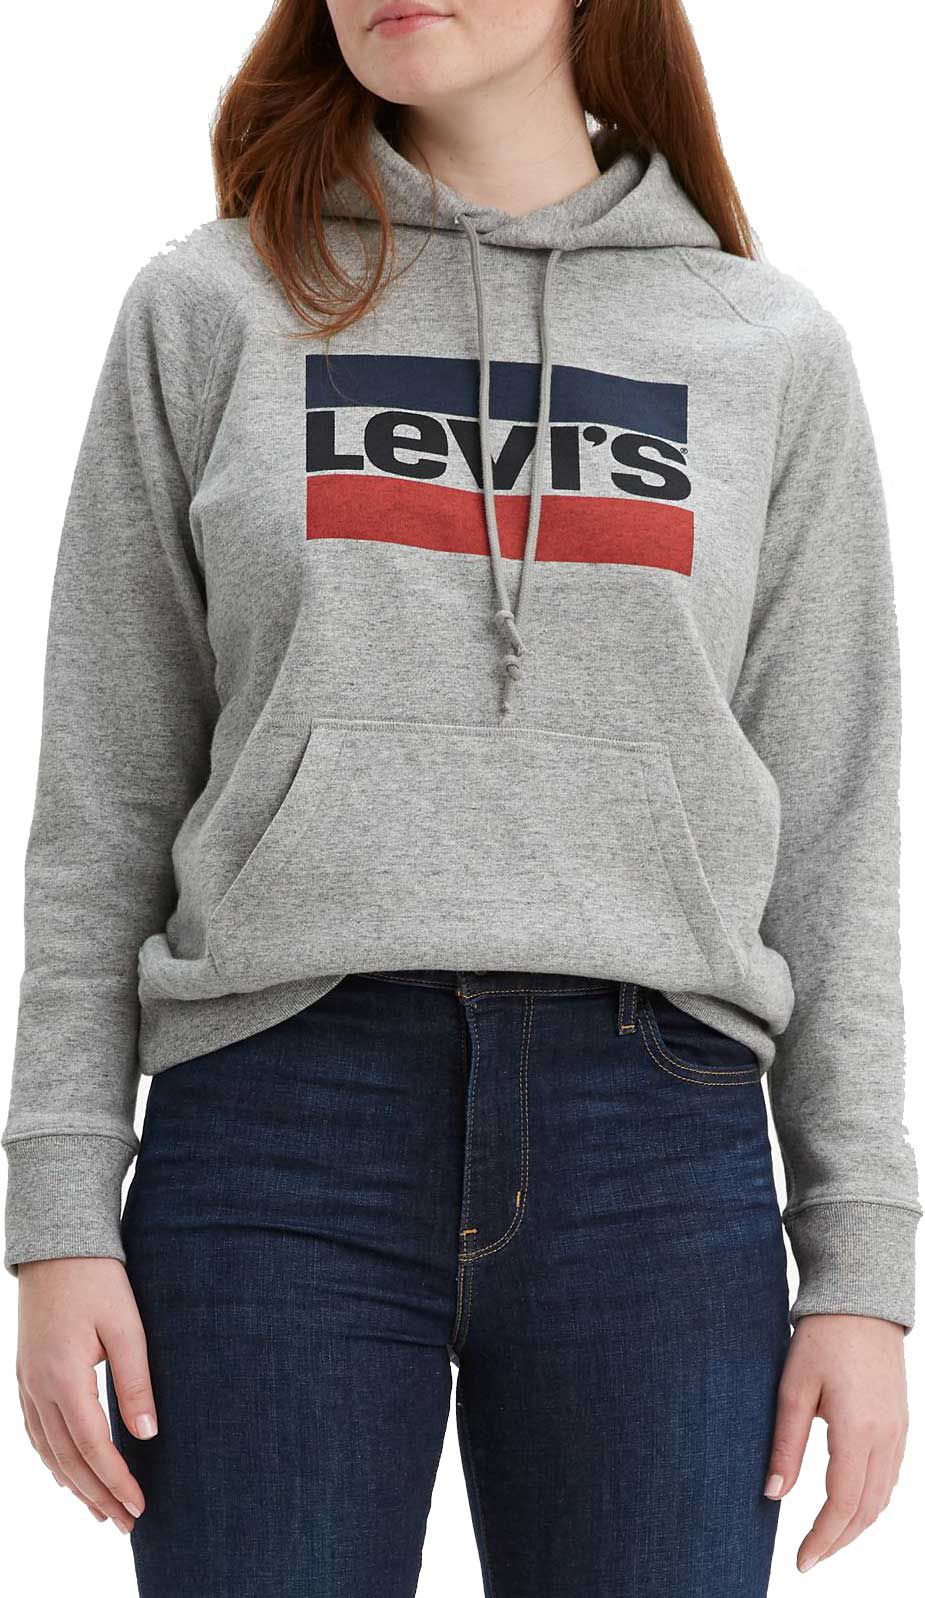 levis zip hoodie women's